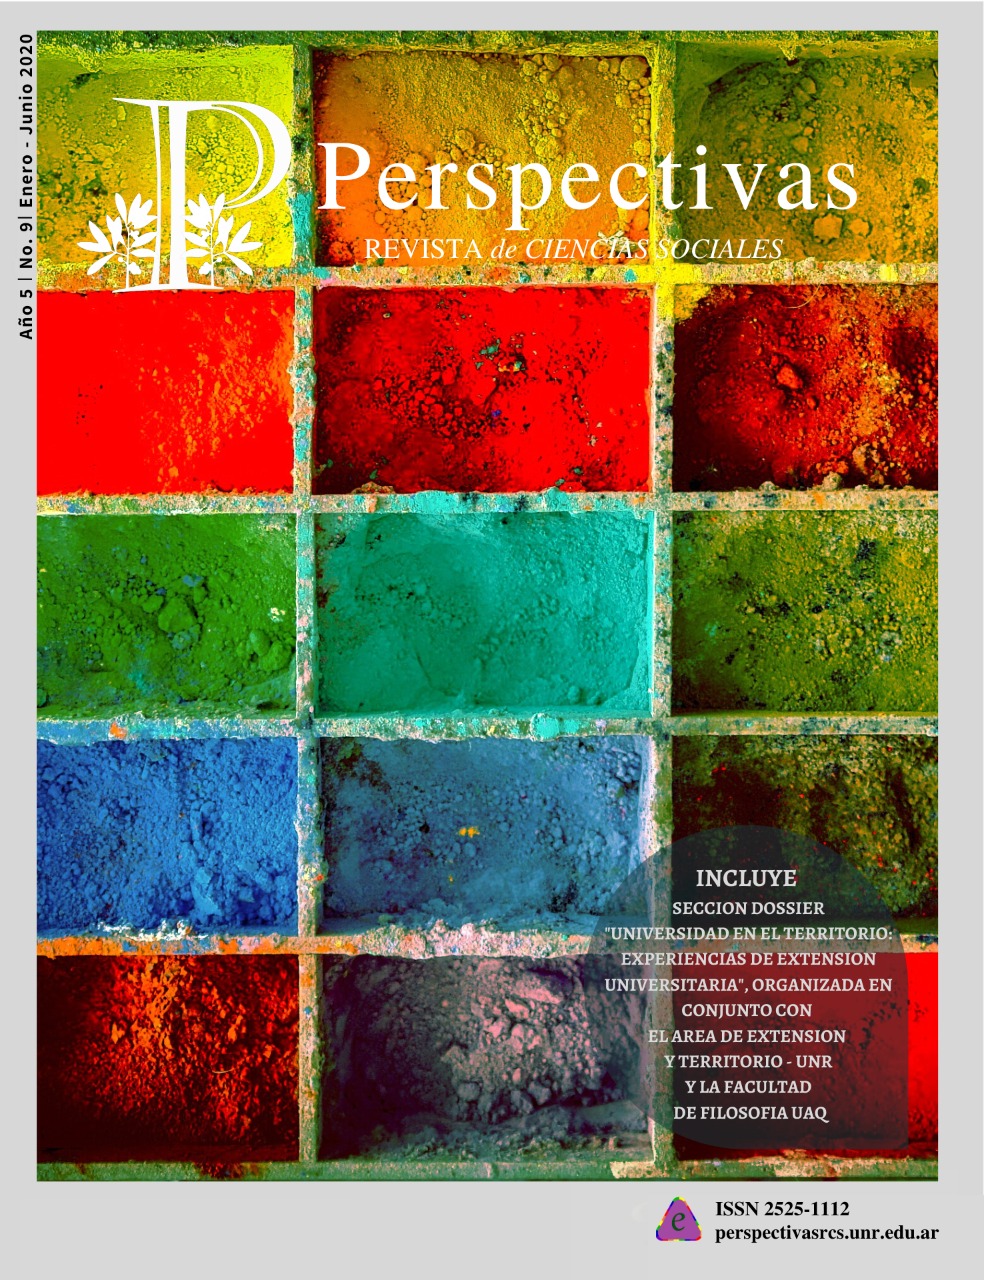 					Ver Vol. 5 Núm. 9 (2020): Perspectivas Revista de Ciencias Sociales No. 9 Enero-Junio  2020
				